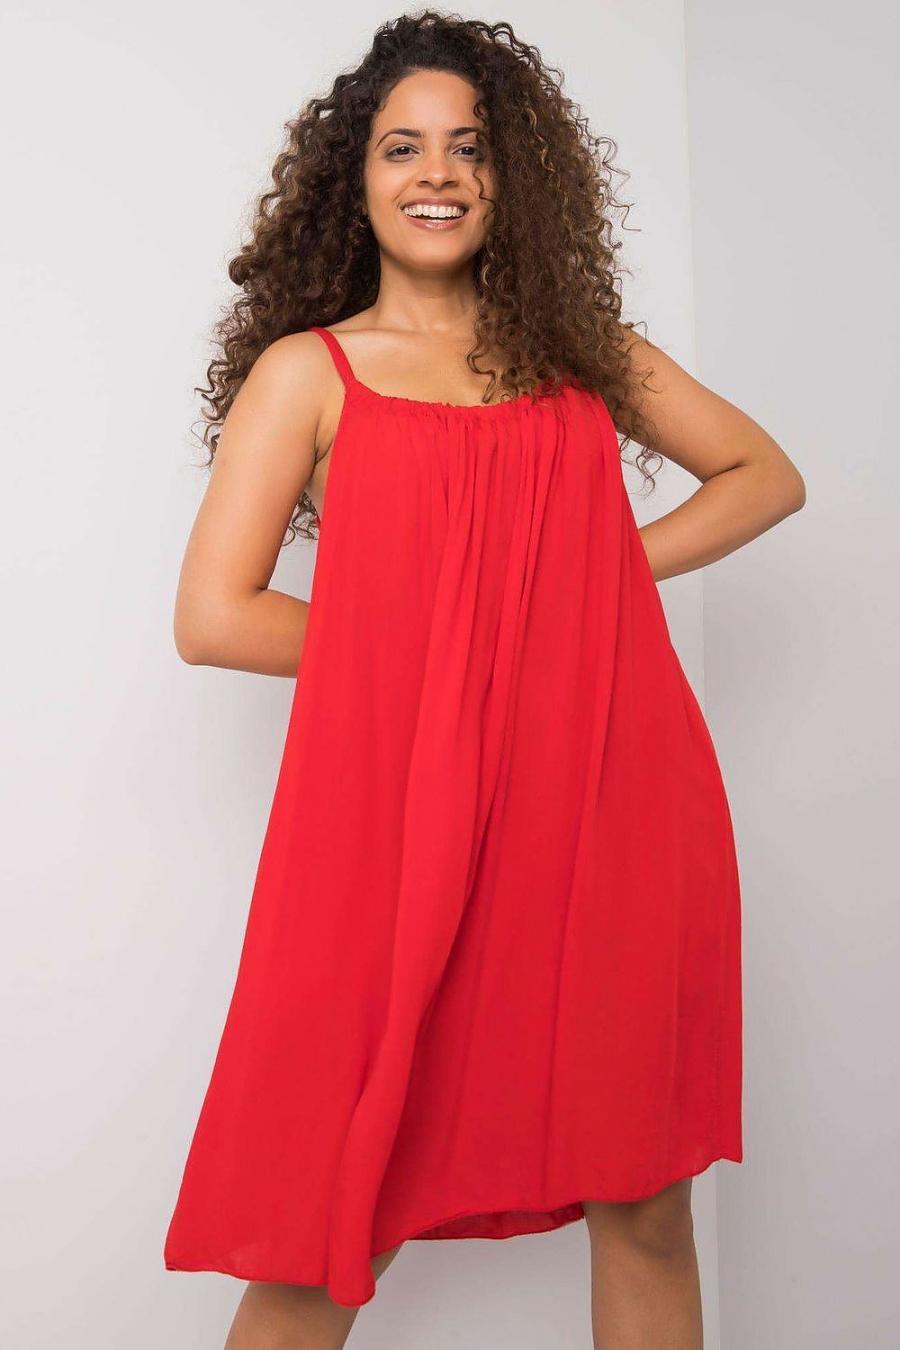 Ostatní značky šaty dámské 165898 - červená - velikost S